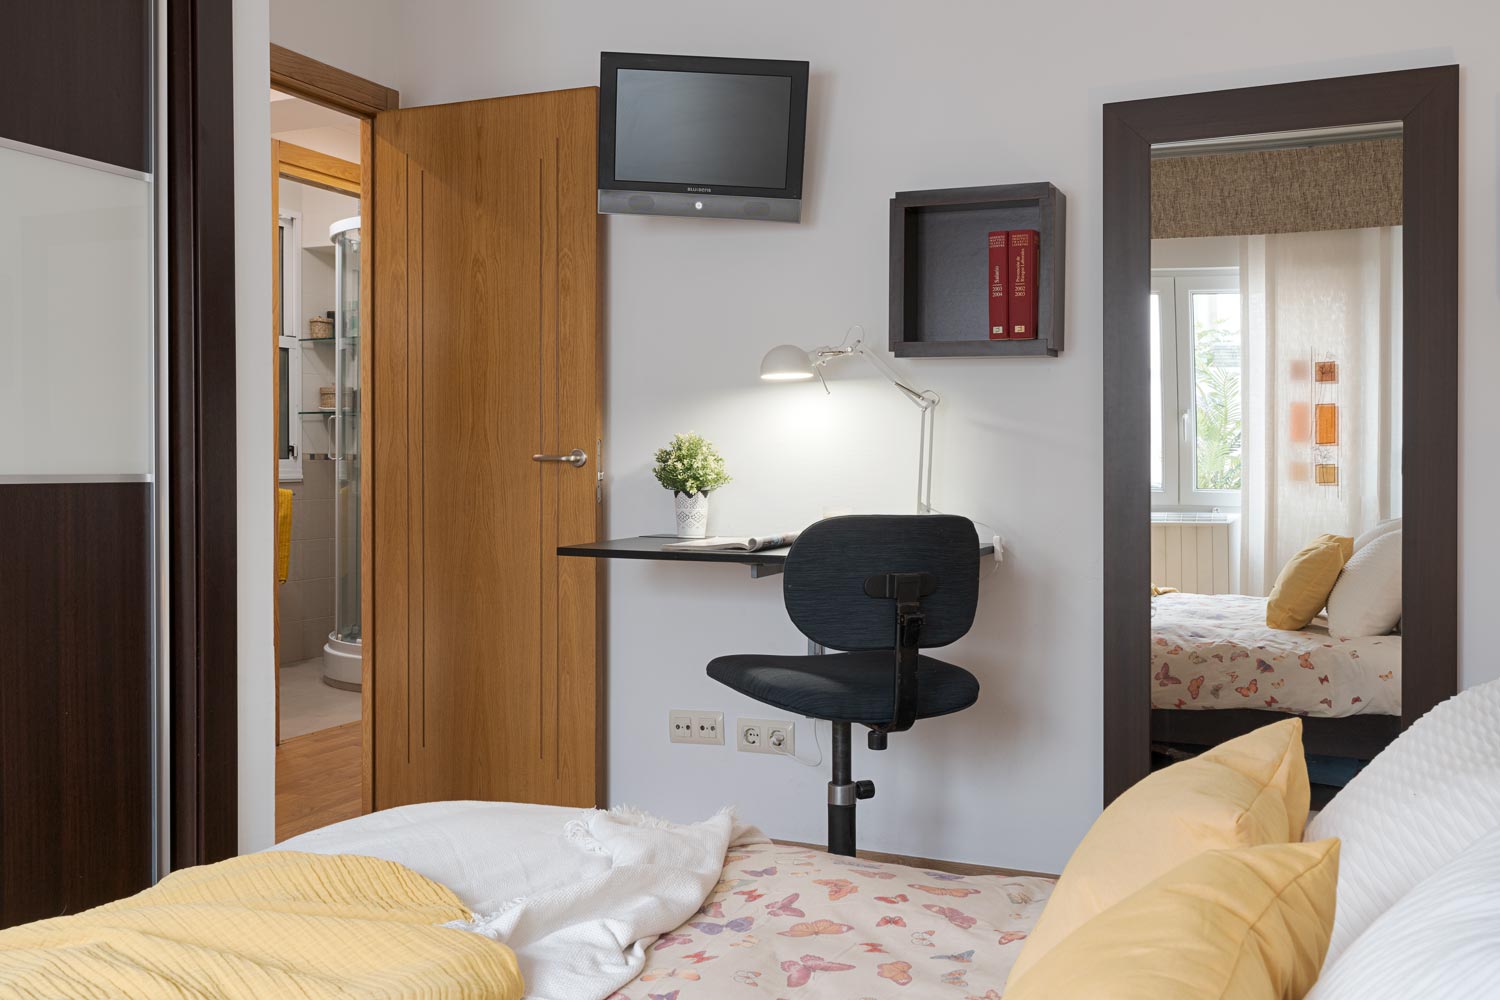 Dormitorio amueblado con una cama con ropa de cama de color neutro, un escritorio con silla, un espejo grande y un televisor montado en la pared.